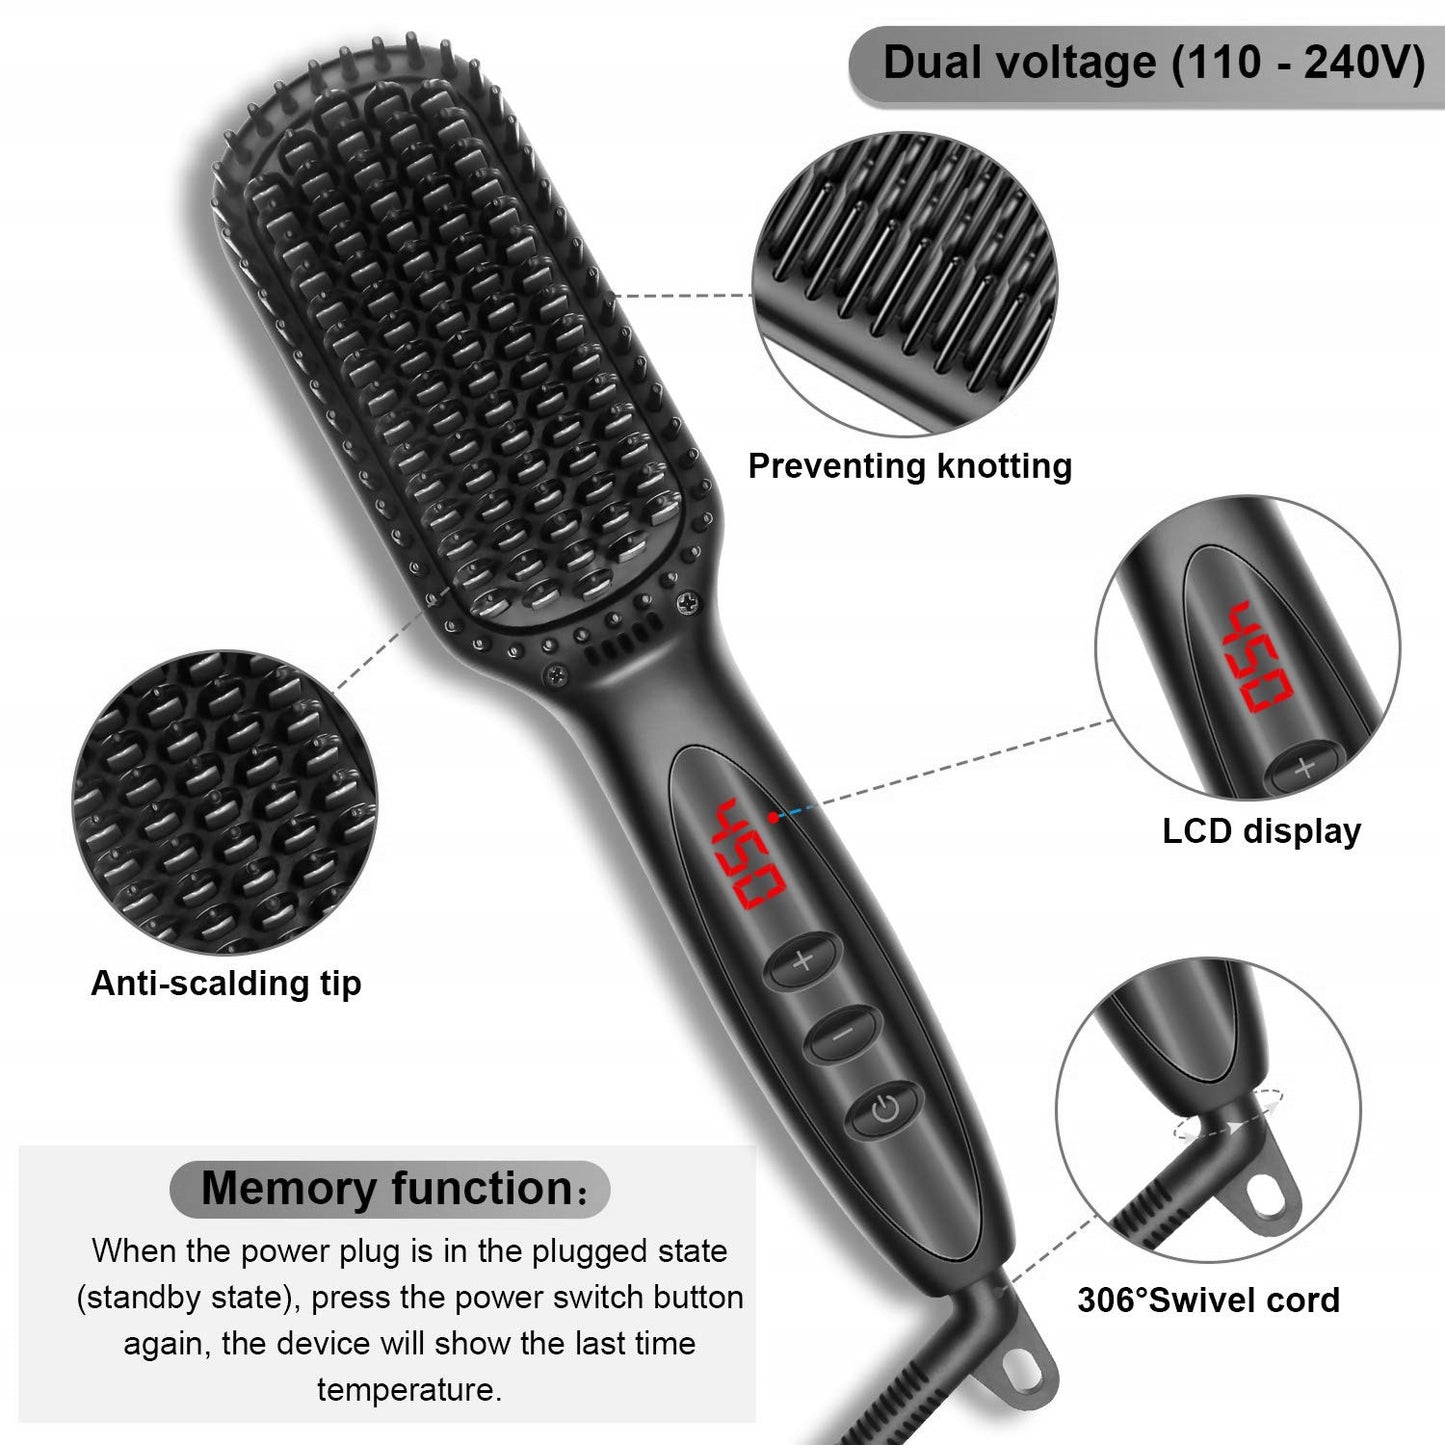 2 in 1 Hair Straightener Brush Heating Beard Clip Comb Styler Electric Ionic Straightening Brush